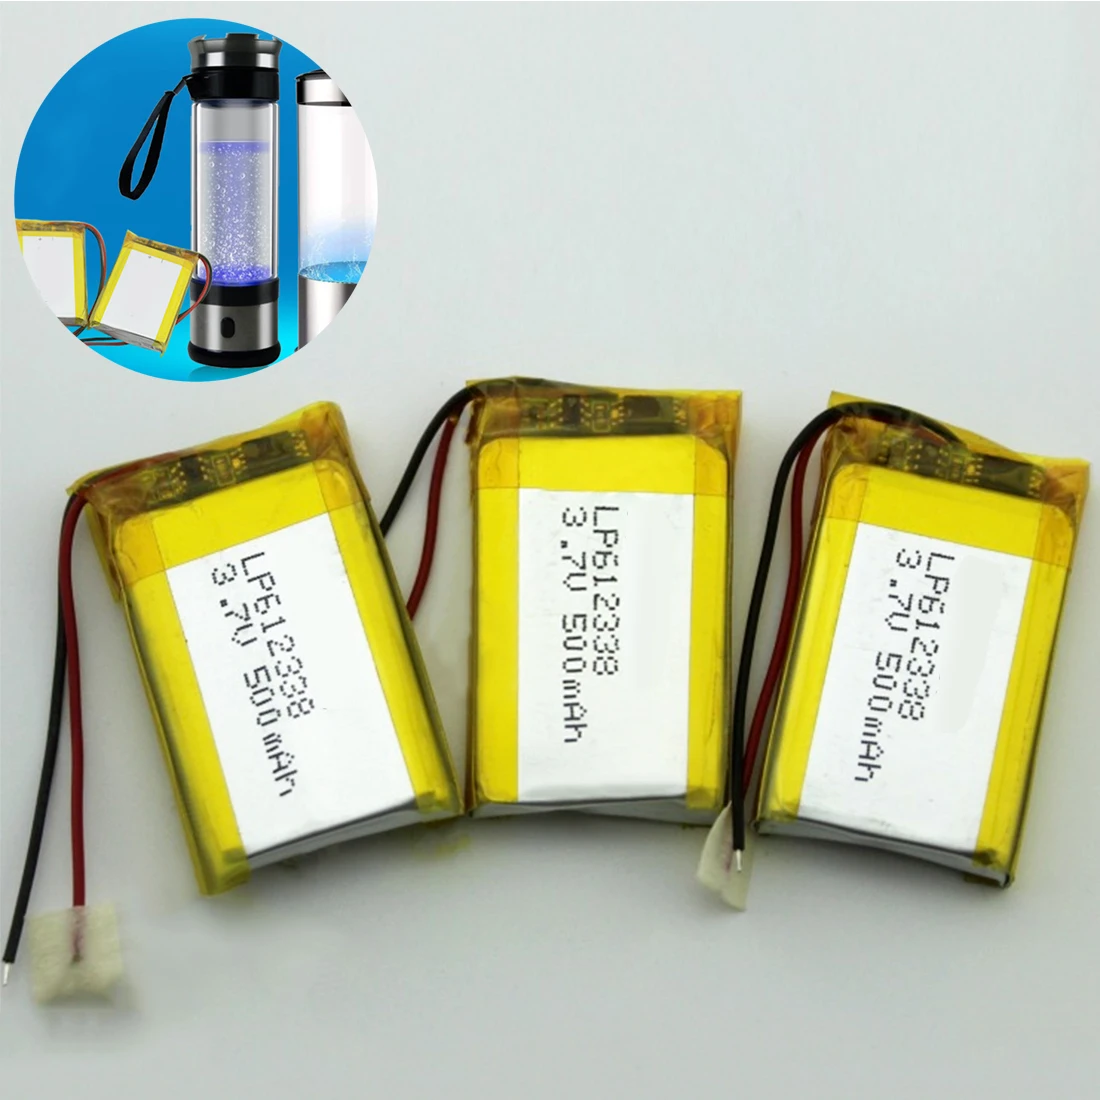 

612338 Lithium Polymer Rechargeable Battery 500mAh 3.7V Li-Po Battery for Recorder DVR GPS MP3 Cell Phone Speaker Li-ion Battery